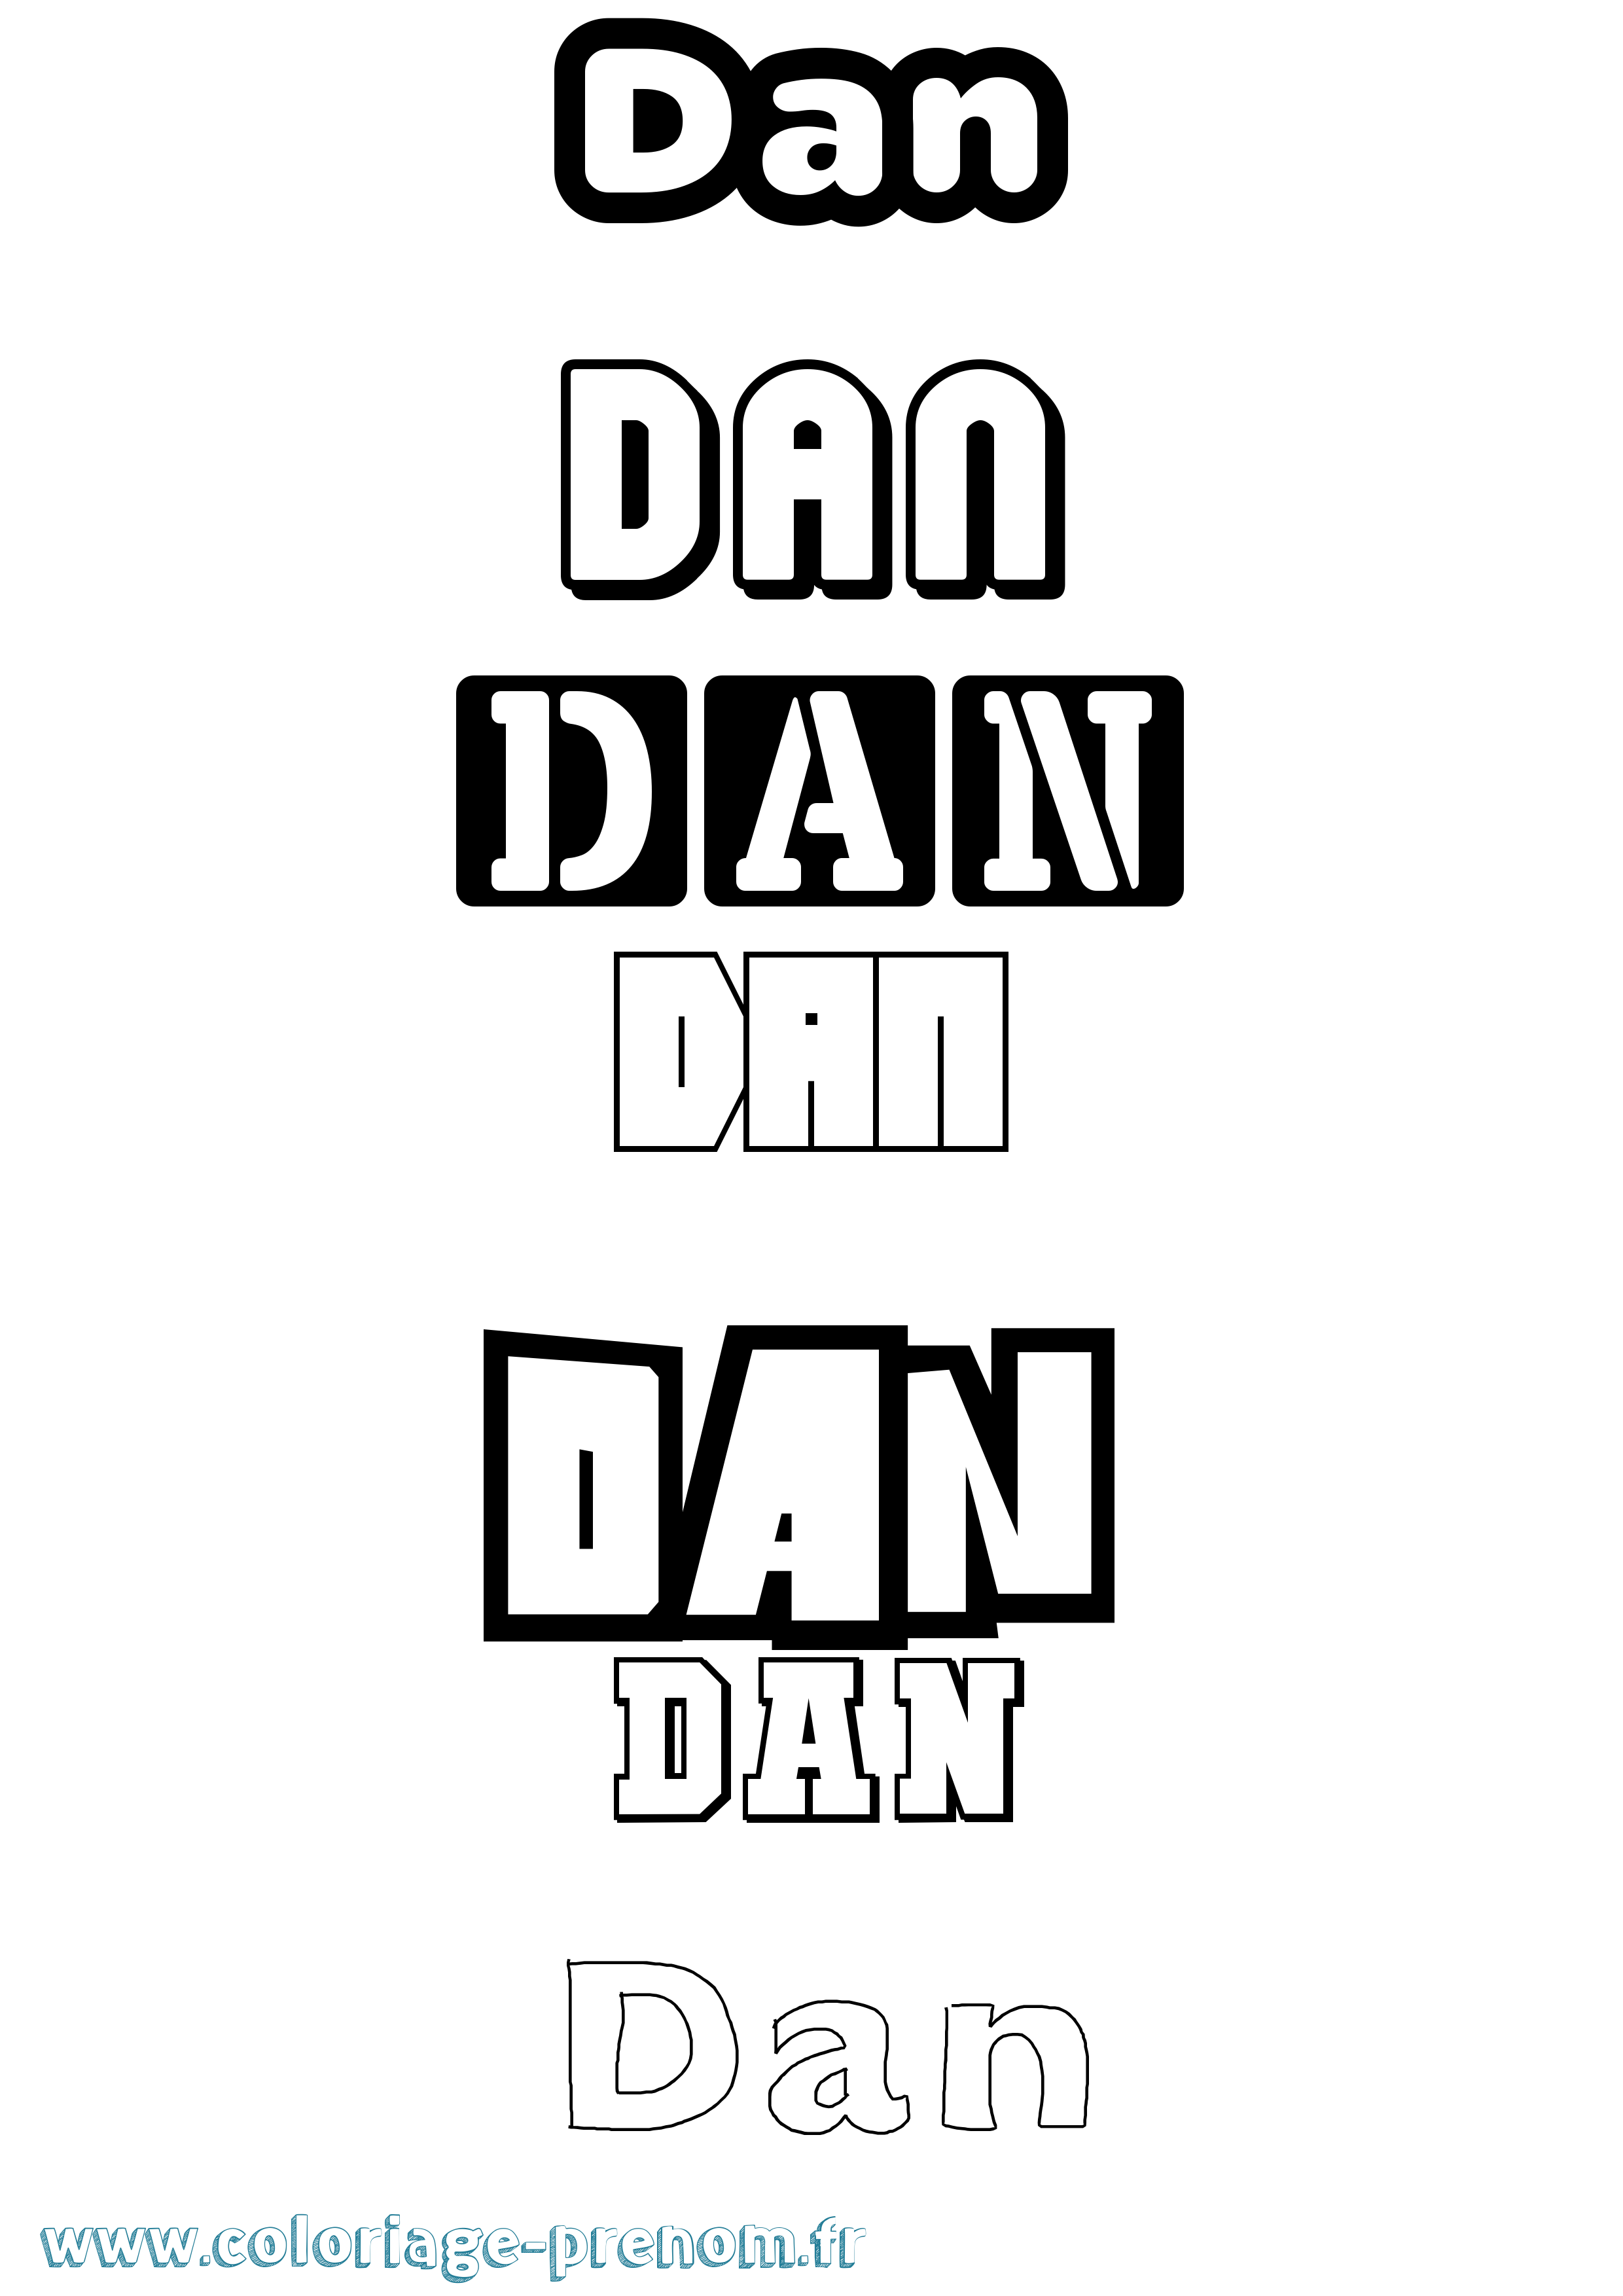 Coloriage prénom Dan